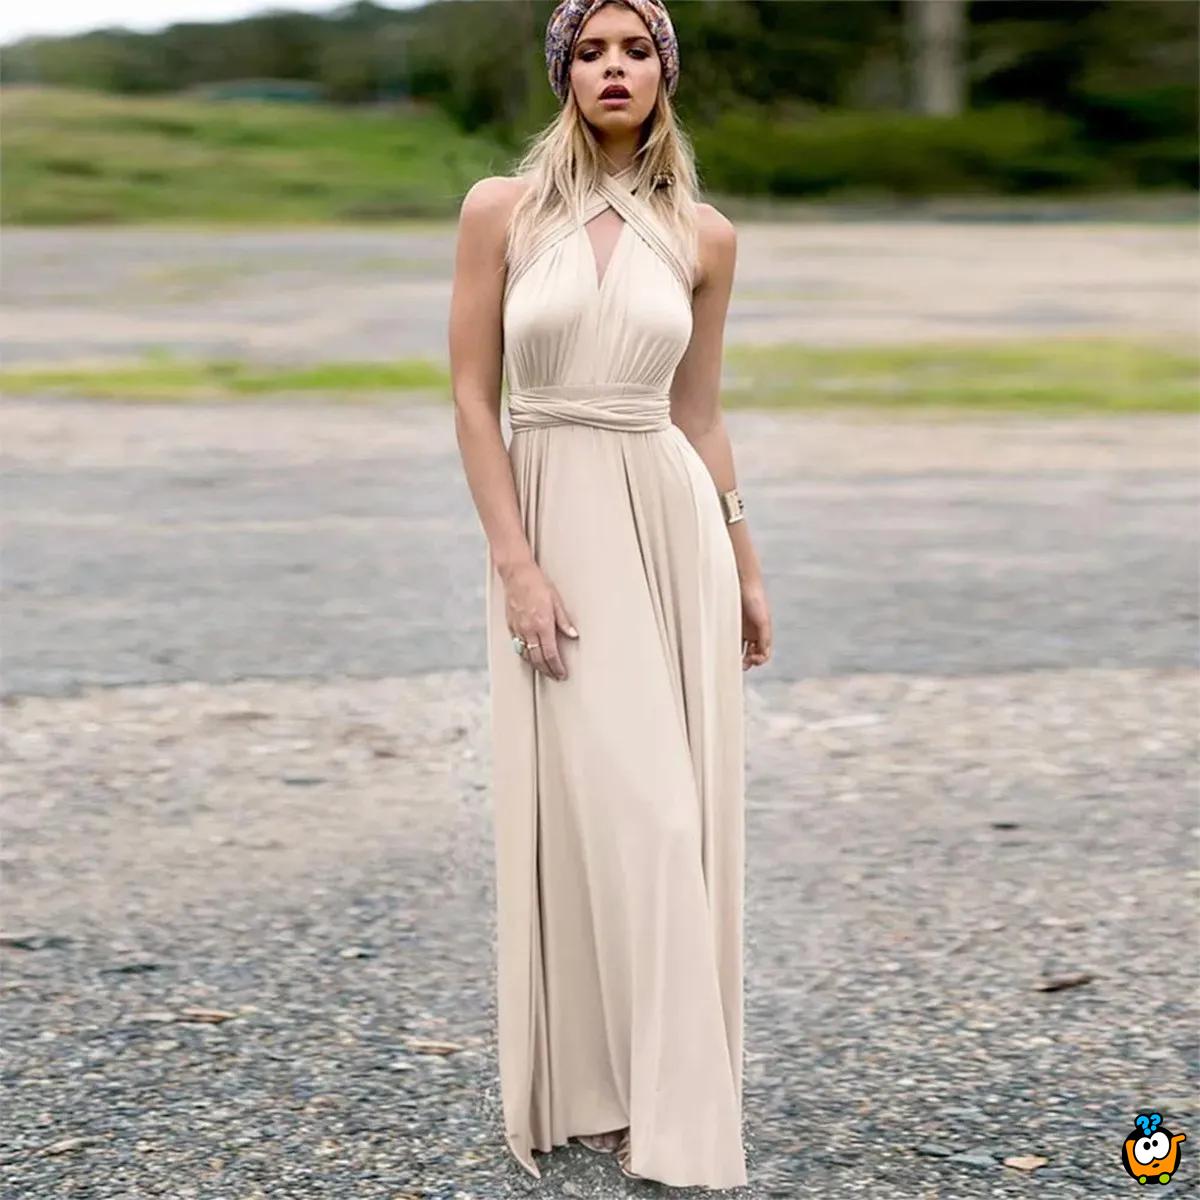 Diana Beige Long Dress – Bež elegantna haljina sa različitim mogućnostima vezivanja